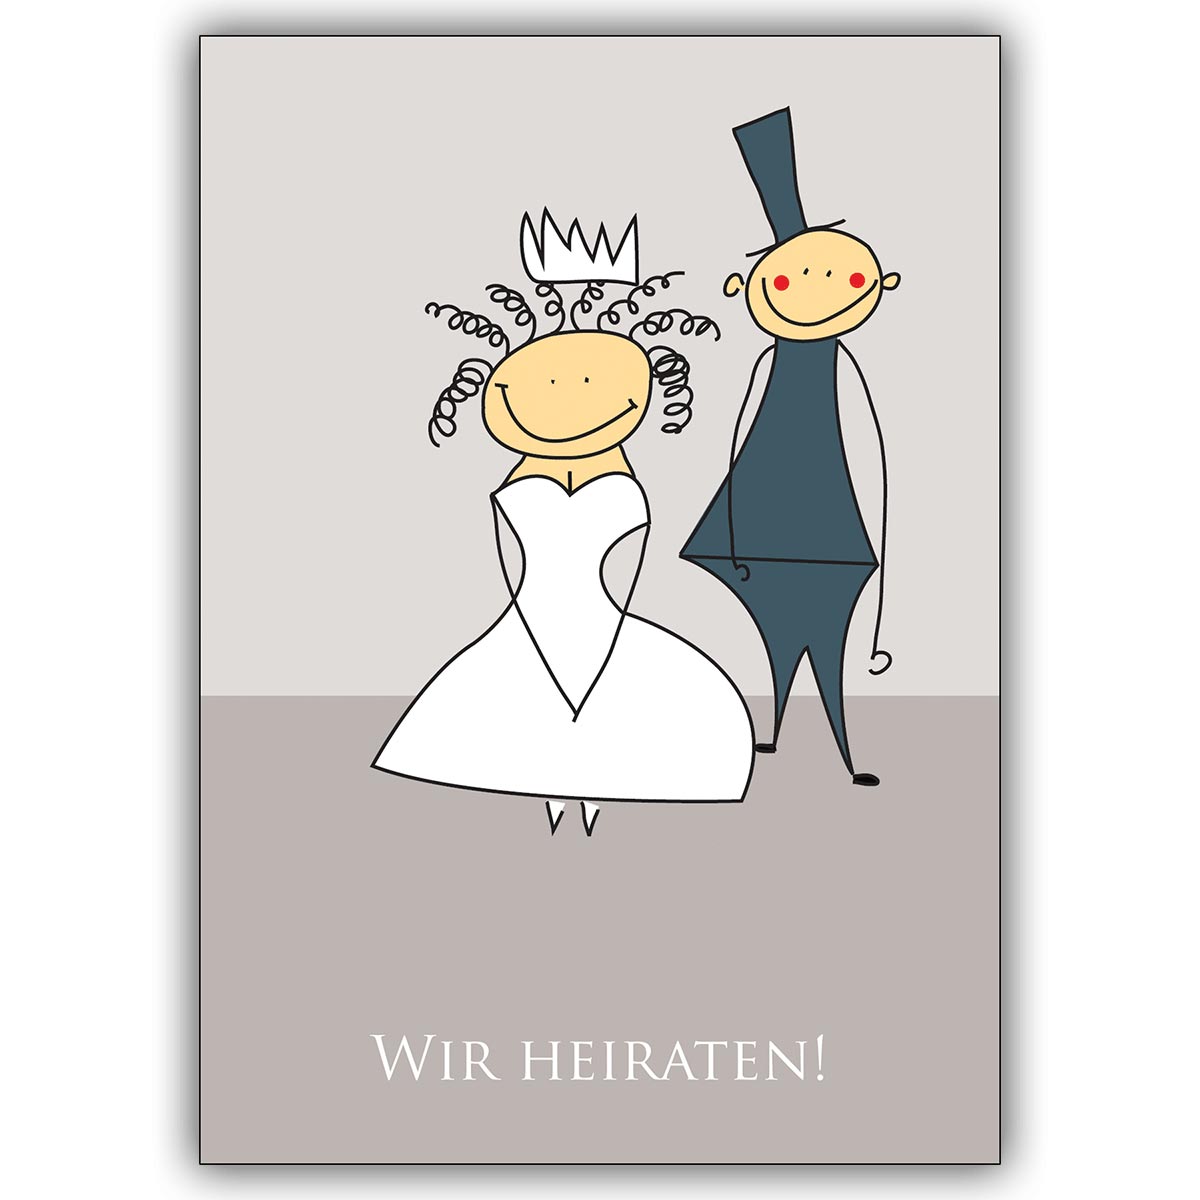 Süße Hochzeitsanzeige mit Brautpaar: Wir heiraten!